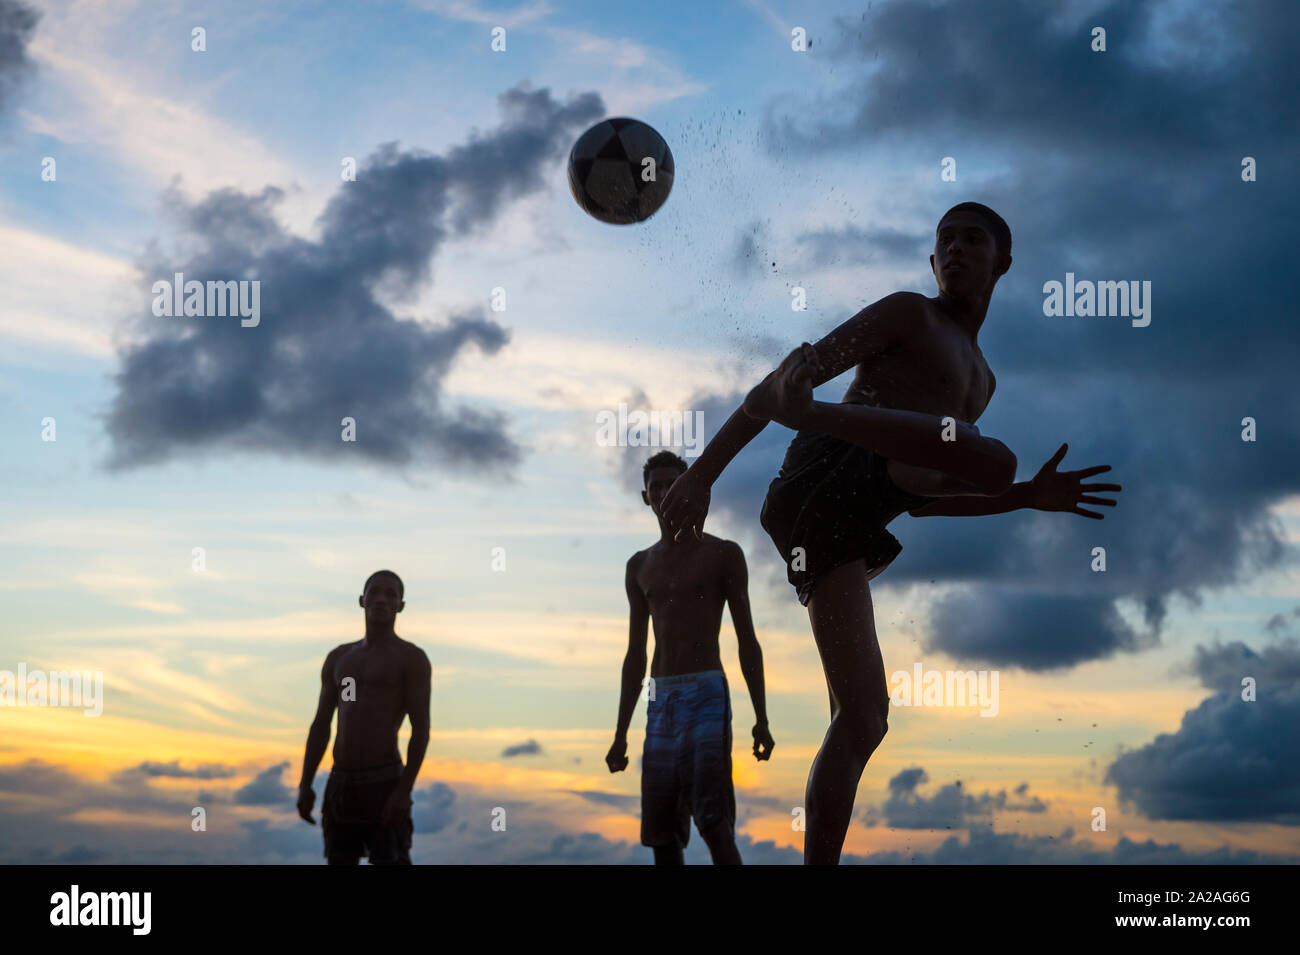 BAHIA, BRASILIEN - 15. Februar, 2018: Junge Männer spielen eine informelle Spiel der Fußball-Keepy Uppy in Silhouette am Ufer eines Sunset Beach. Stockfoto